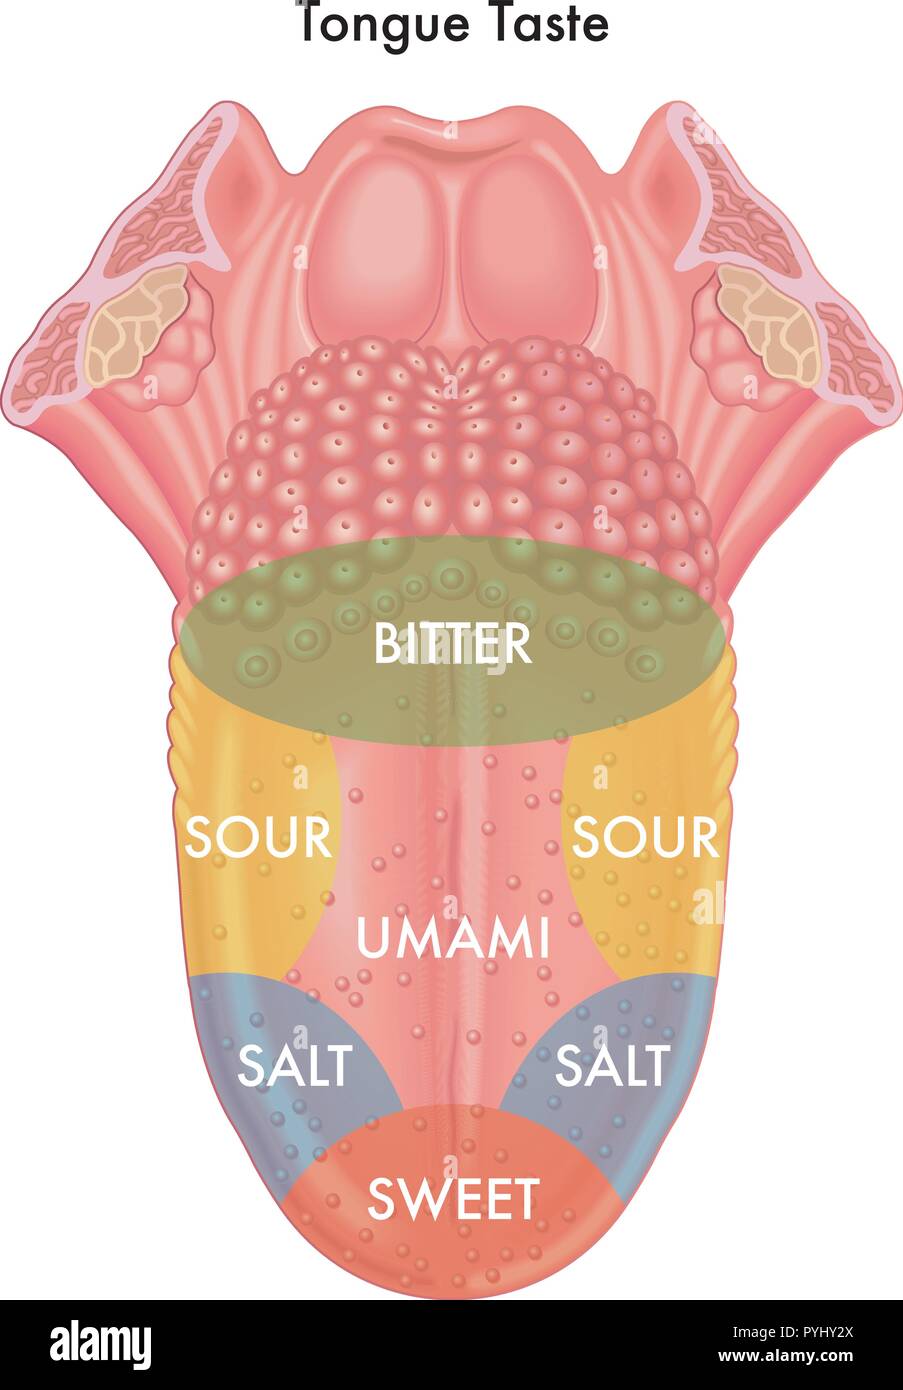 Vektor medizinische Abbildung: schematische Karte der Zunge Geschmack Stock Vektor